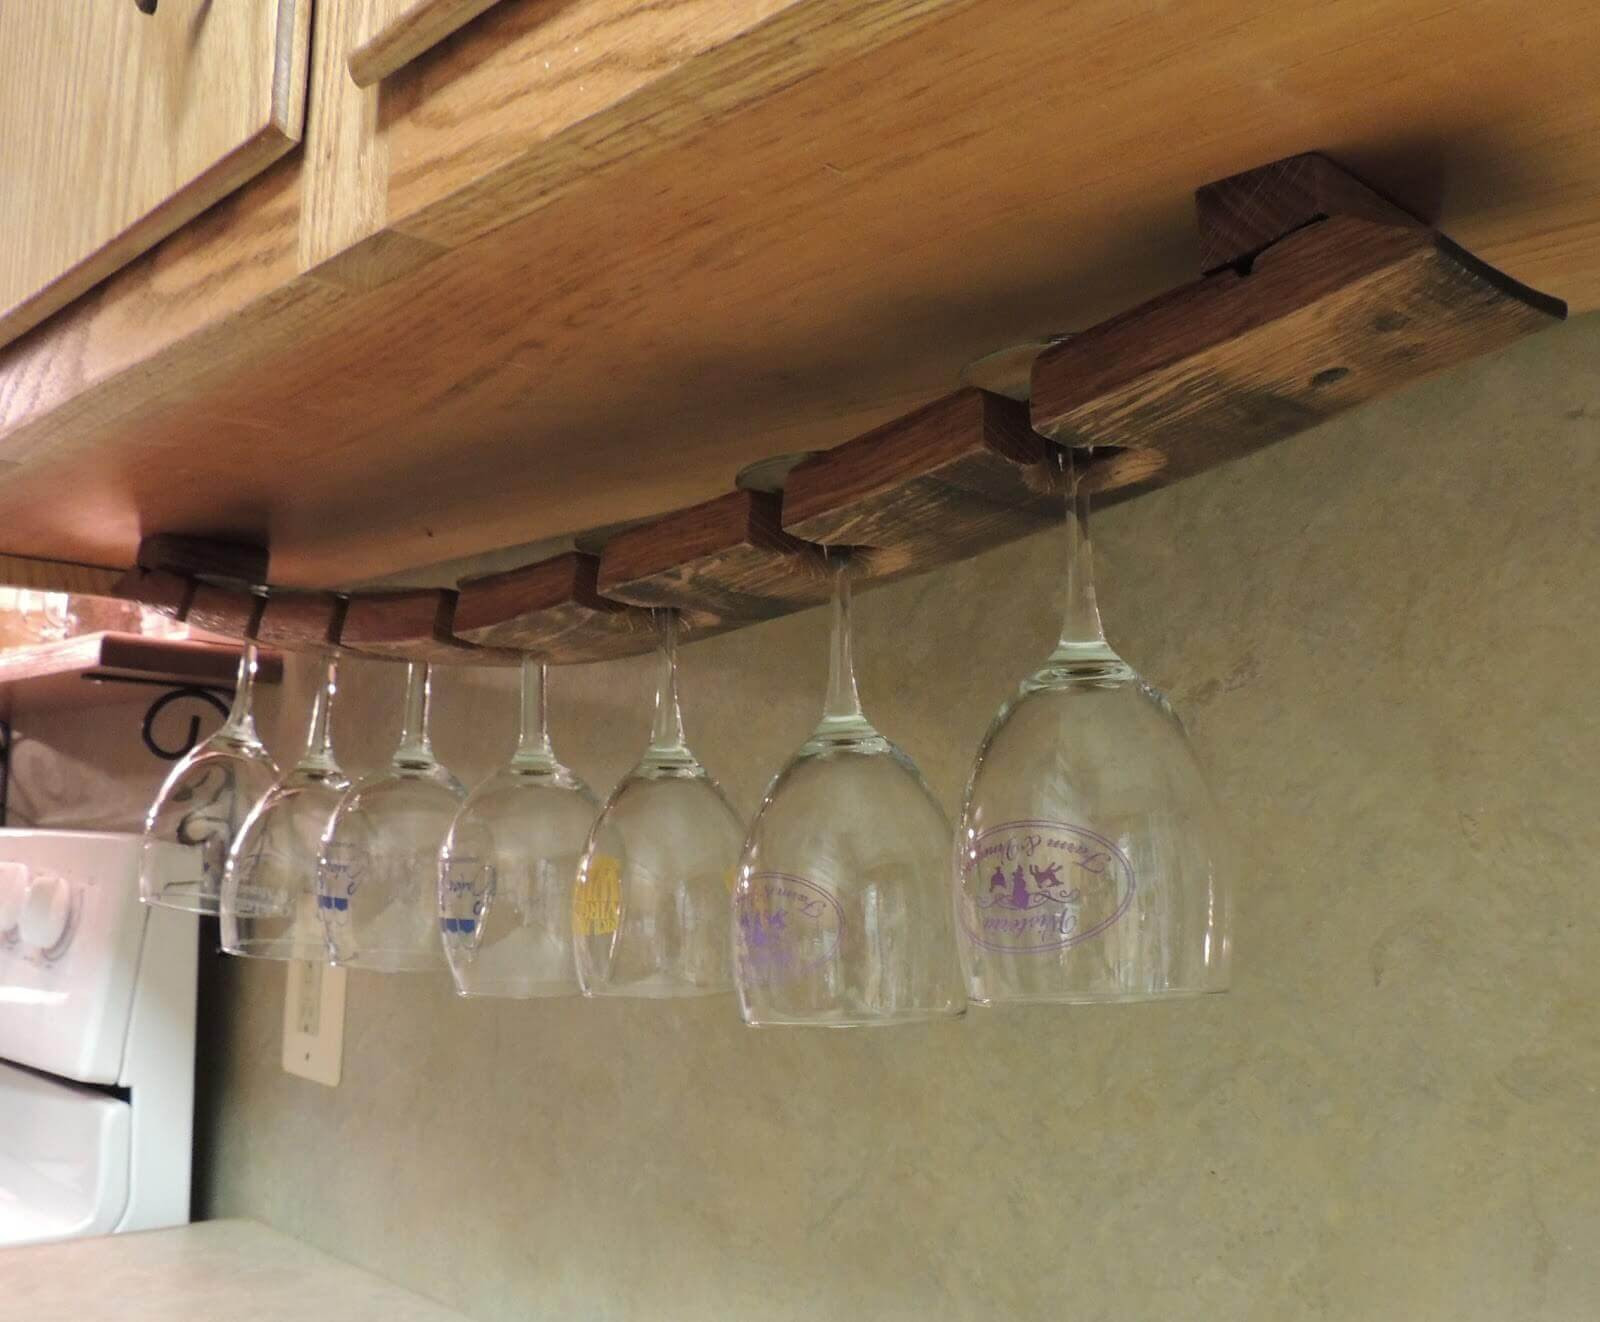 Best ideas about DIY Under Cabinet Wine Glass Rack
. Save or Pin Under Cabinet Hanging Glass Rack DIY Under Counter Wine Now.